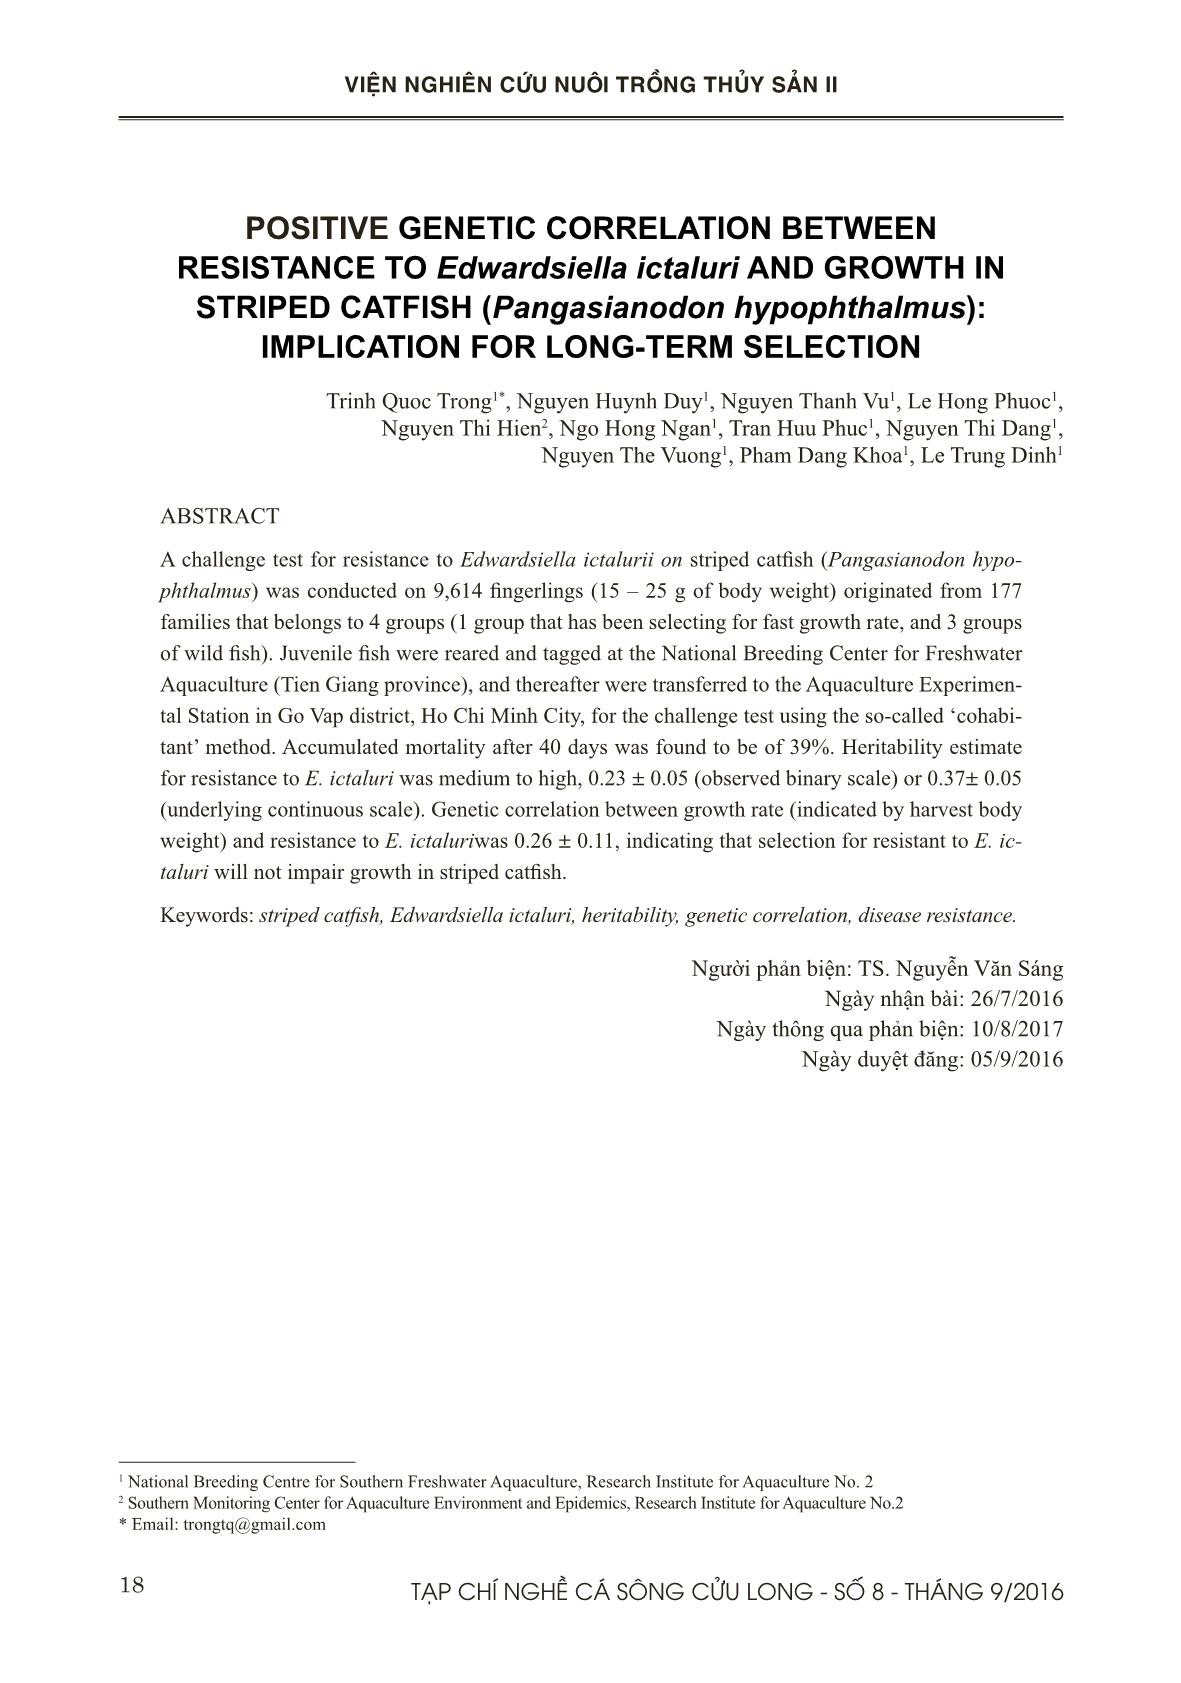 Tương quan di truyền dương giữa tính trạng kháng bệnh gan thận mủ và tăng trưởng trên cá tra (Pangasianodon hypophthalmus): Ý nghĩa cho chọn giống dài hạn trang 9